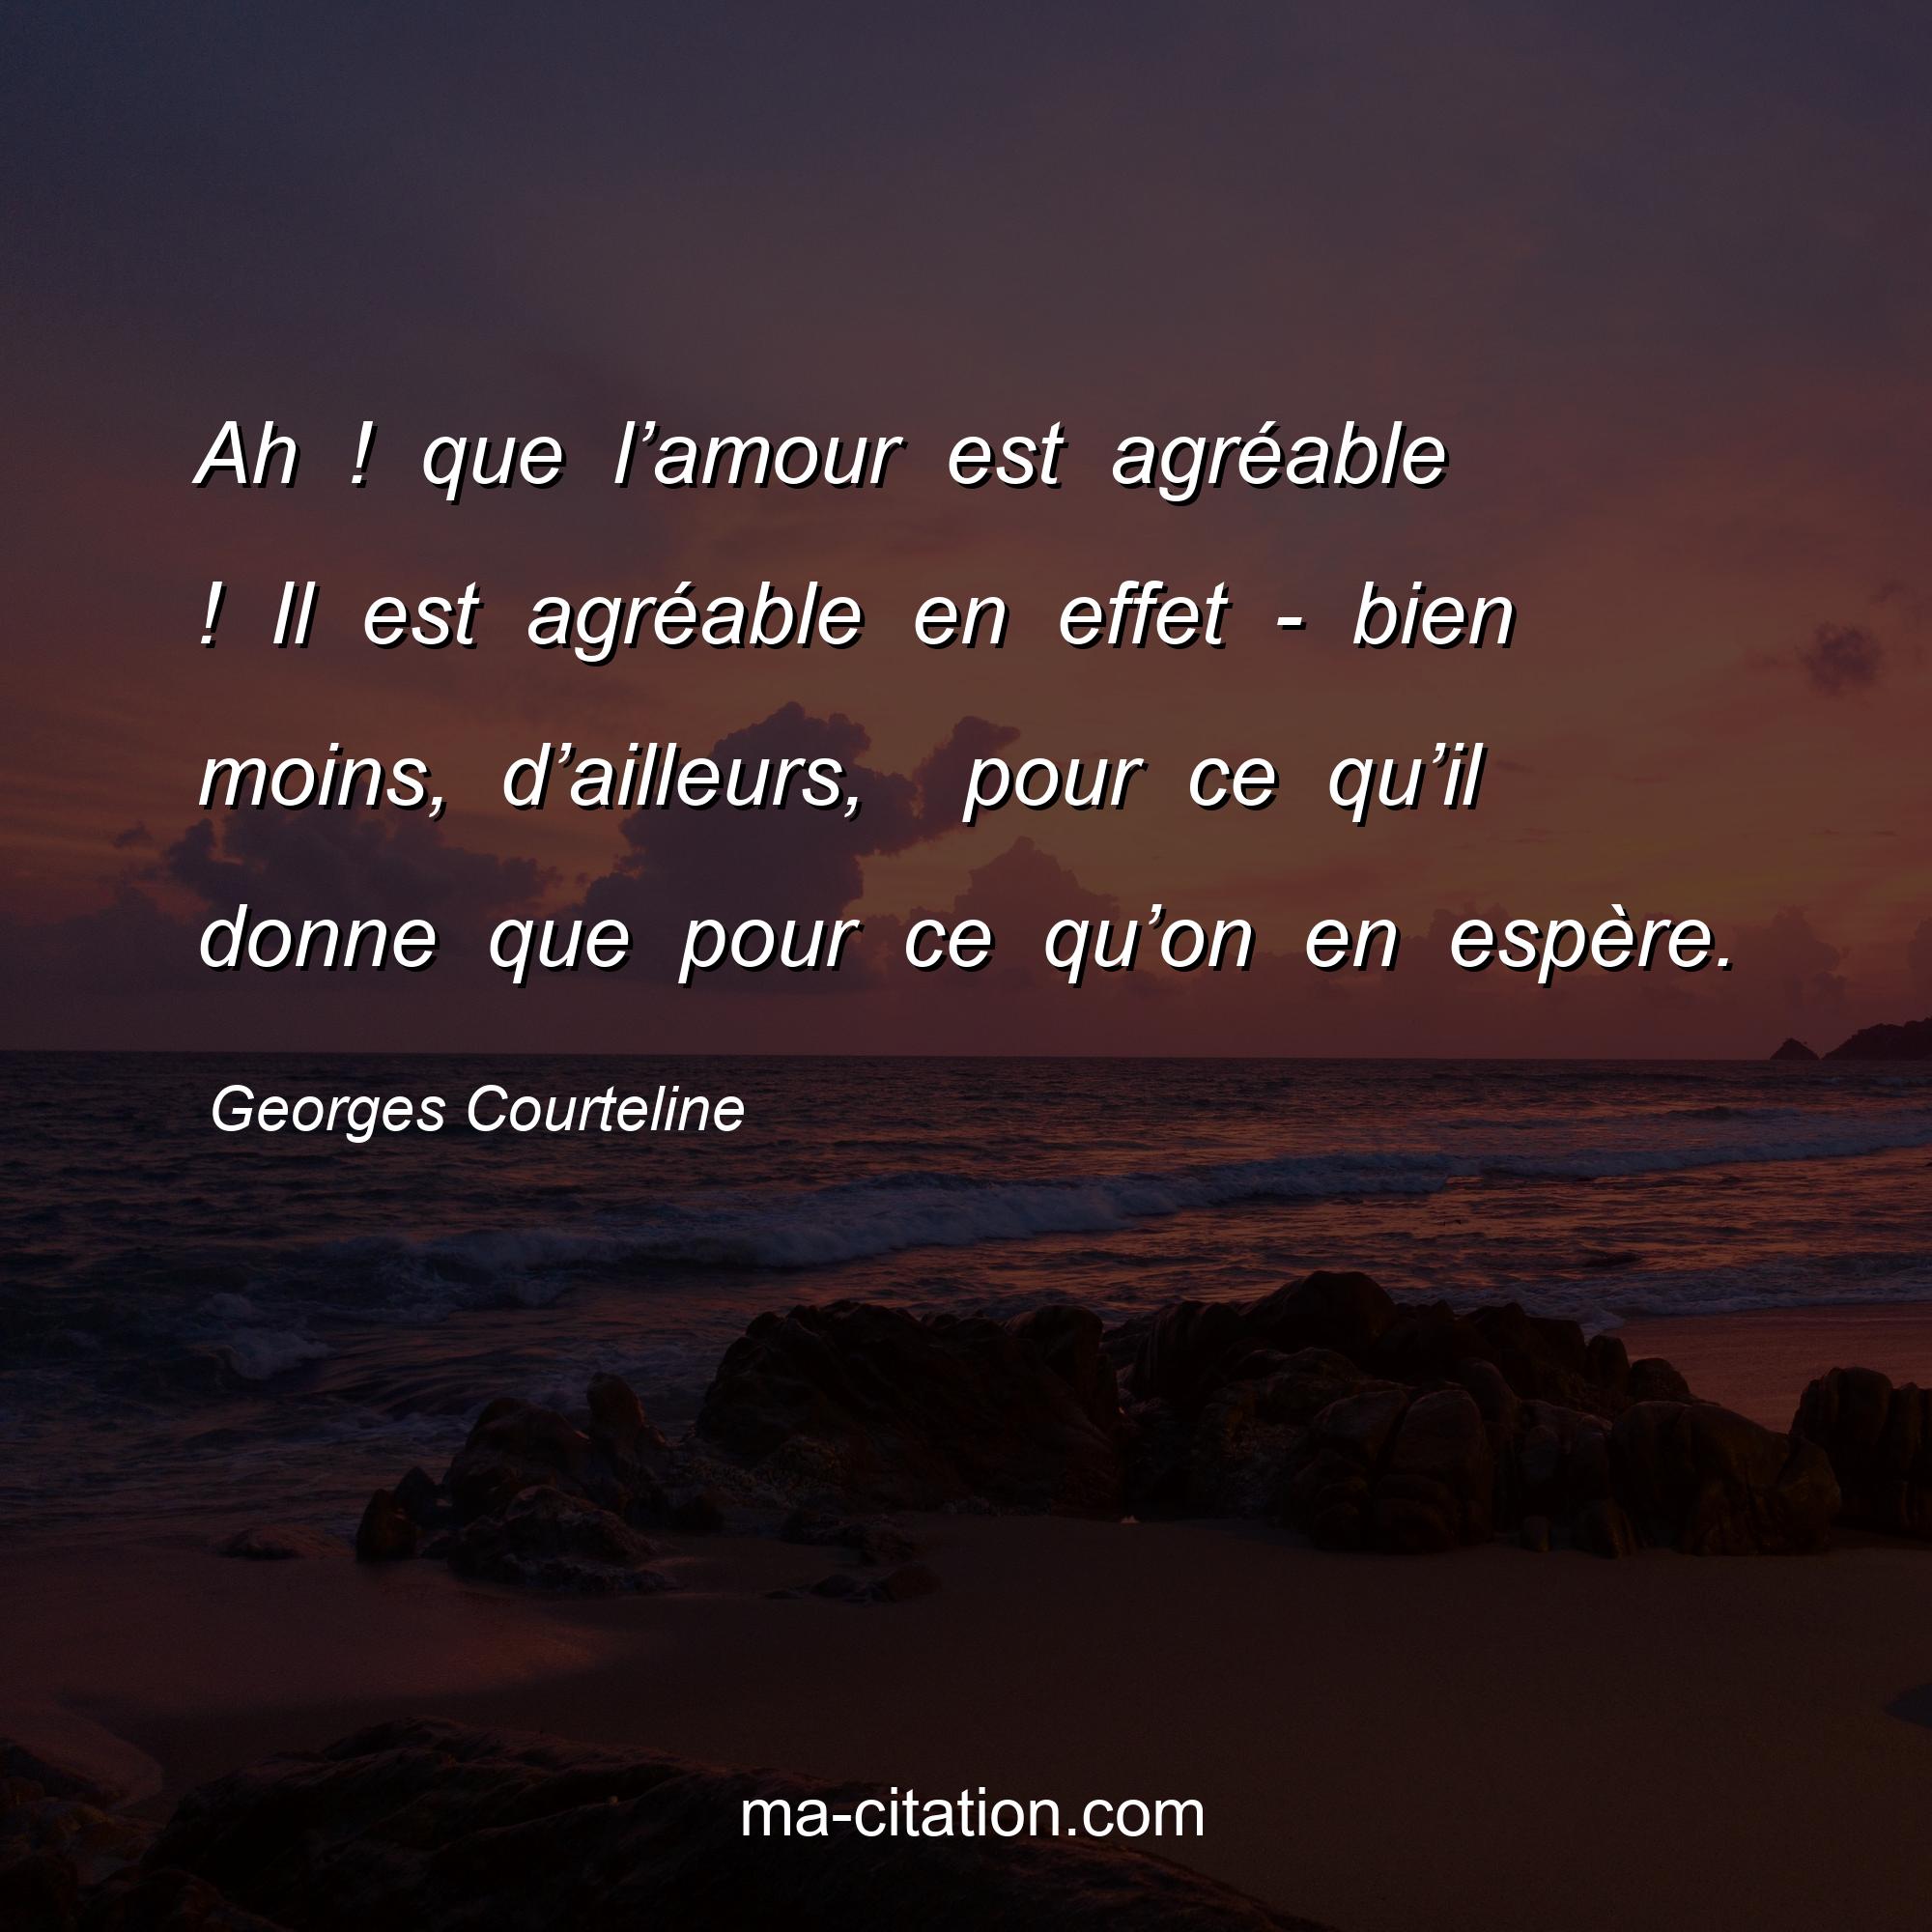 Georges Courteline : Ah ! que l’amour est agréable ! Il est agréable en effet - bien moins, d’ailleurs,  pour ce qu’il donne que pour ce qu’on en espère.